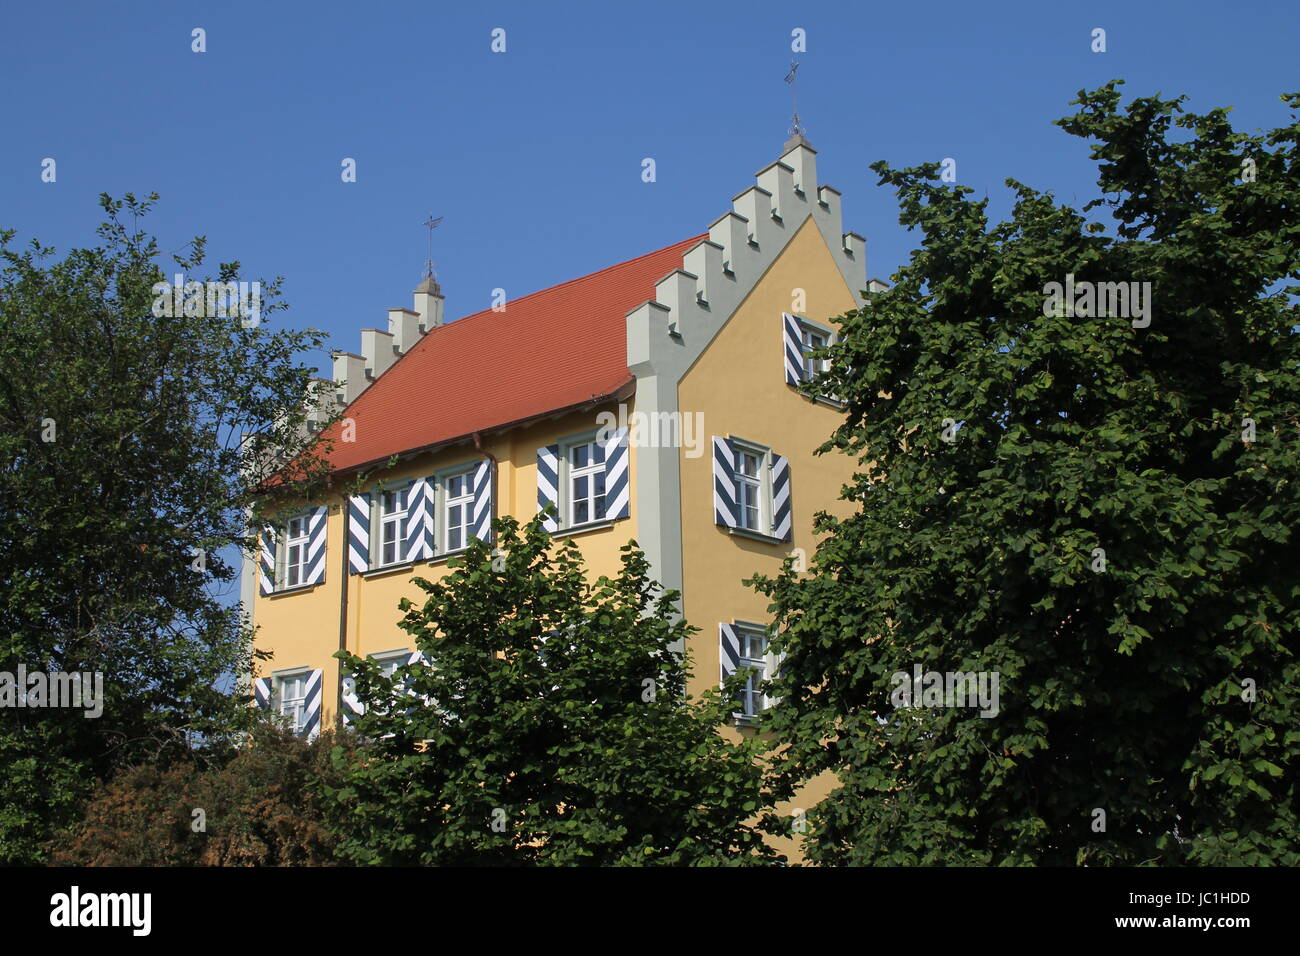 Giebelhaus Haus Stockfoto